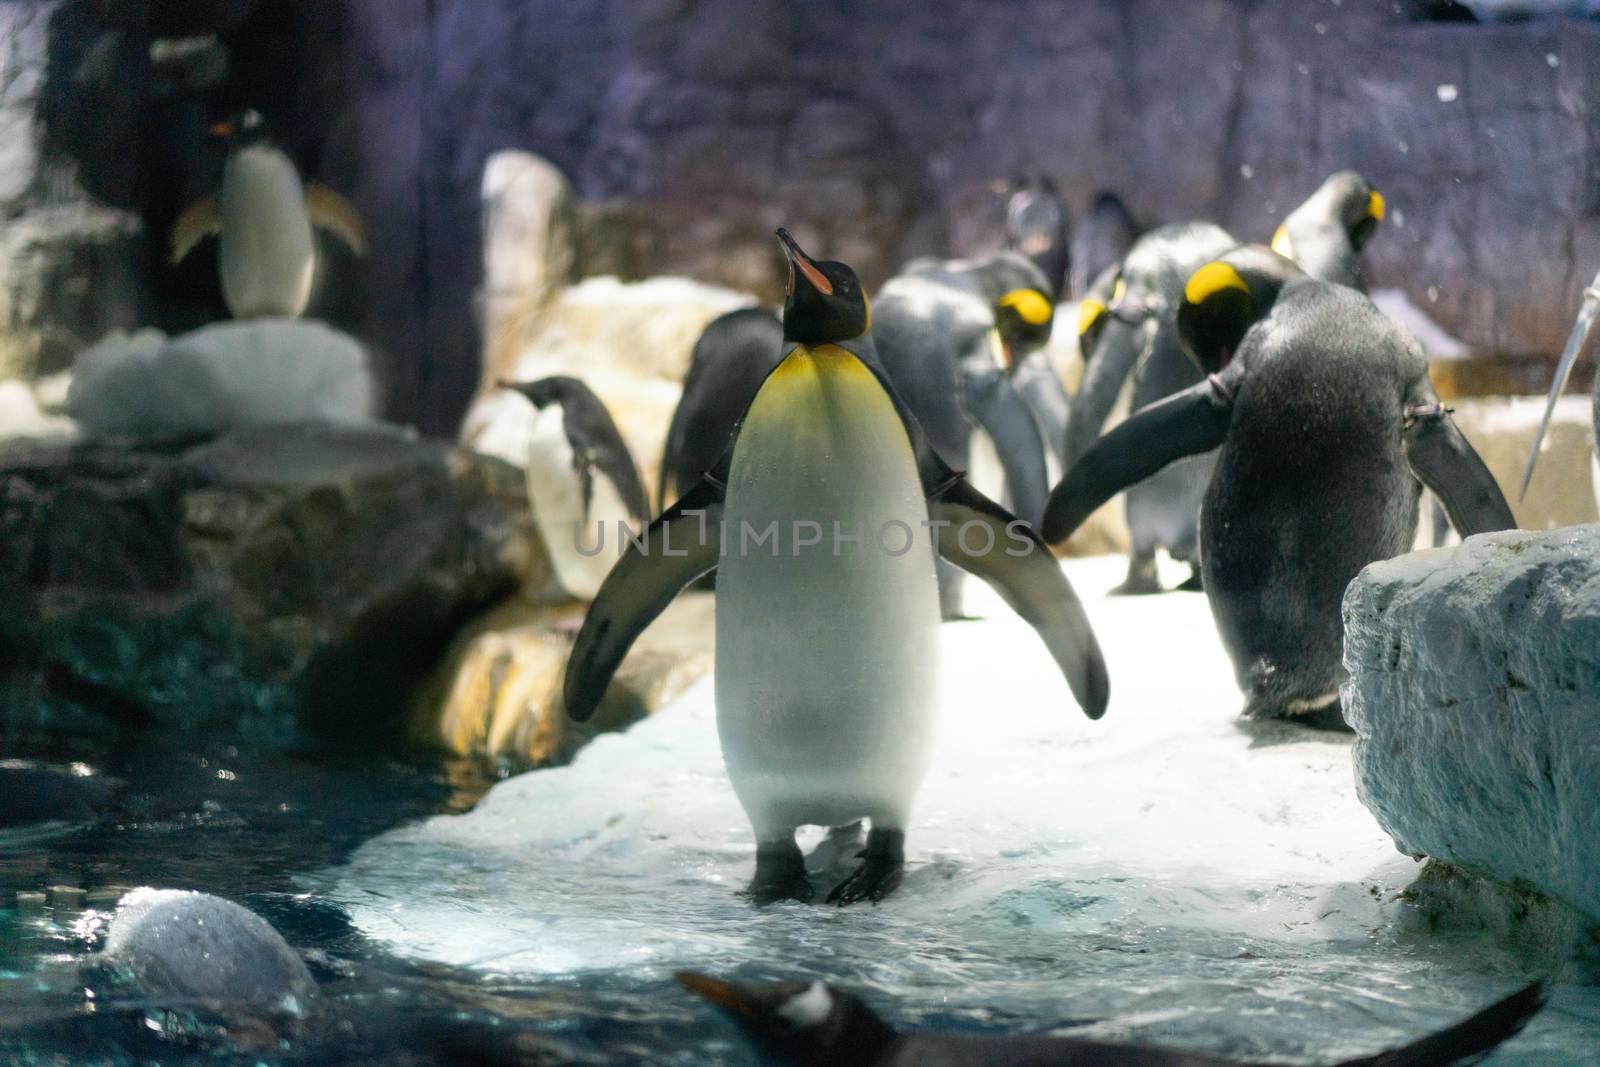 Folk of Gentoo penguins and King penguins at Osaka Aquarium Kaiy by Songpracone